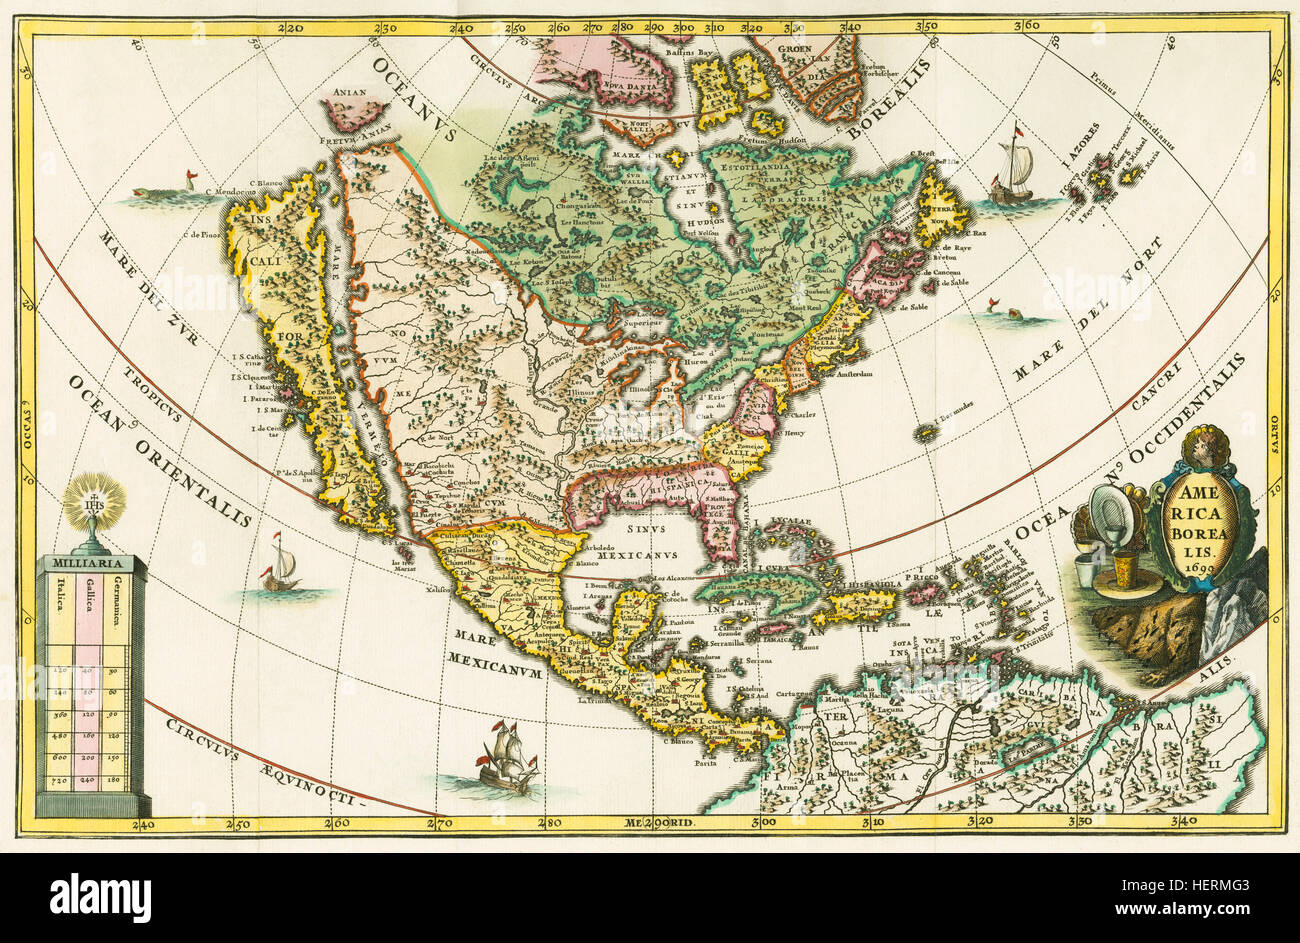 América boreal. Mapa de América del Norte muestra a California como una isla. De Heinrich Scherer, Geographia hierarchica, uno de los siete volúmenes de un conjunto llamado Atlas Novus, publicado por primera vez entre 1702 y 1710. Los 180 mapas en la colección probablemente estaban dispuestos alrededor de 1699-1700. Este mapa es de fecha 1699 en la orla. Foto de stock